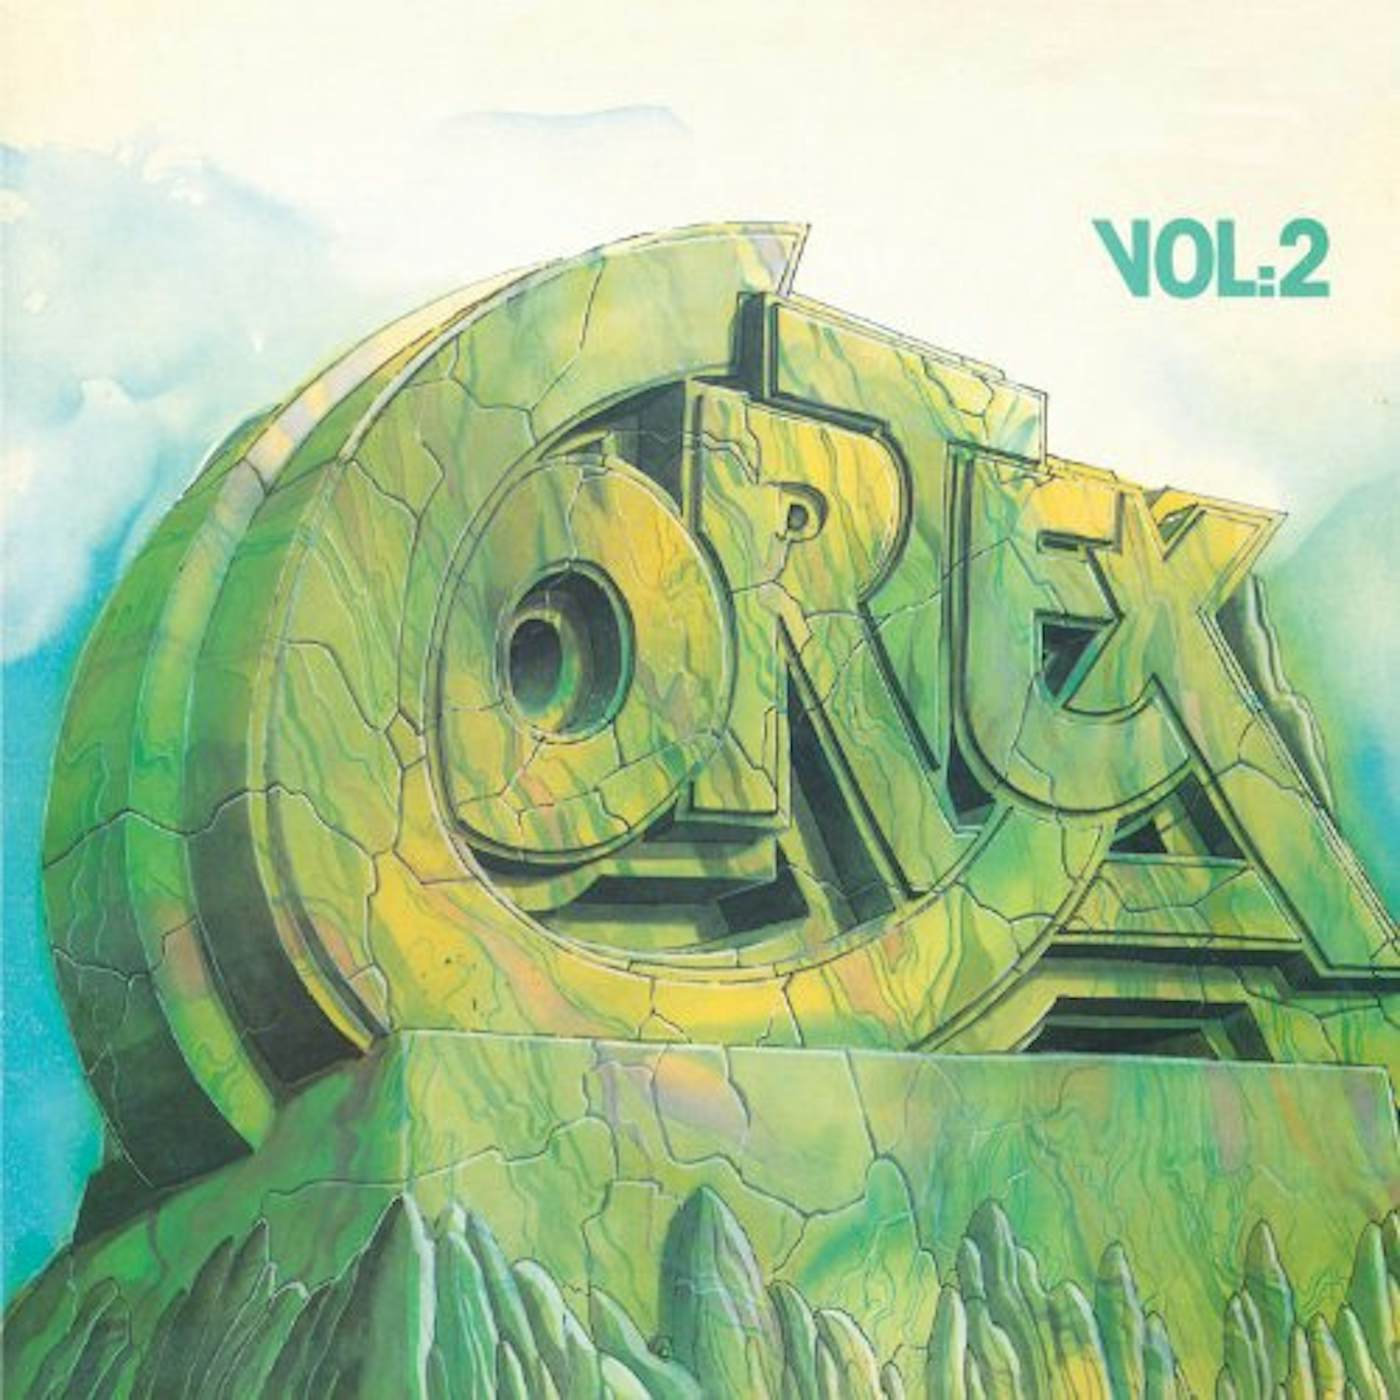 Cortex VOL. 2 Vinyl Record